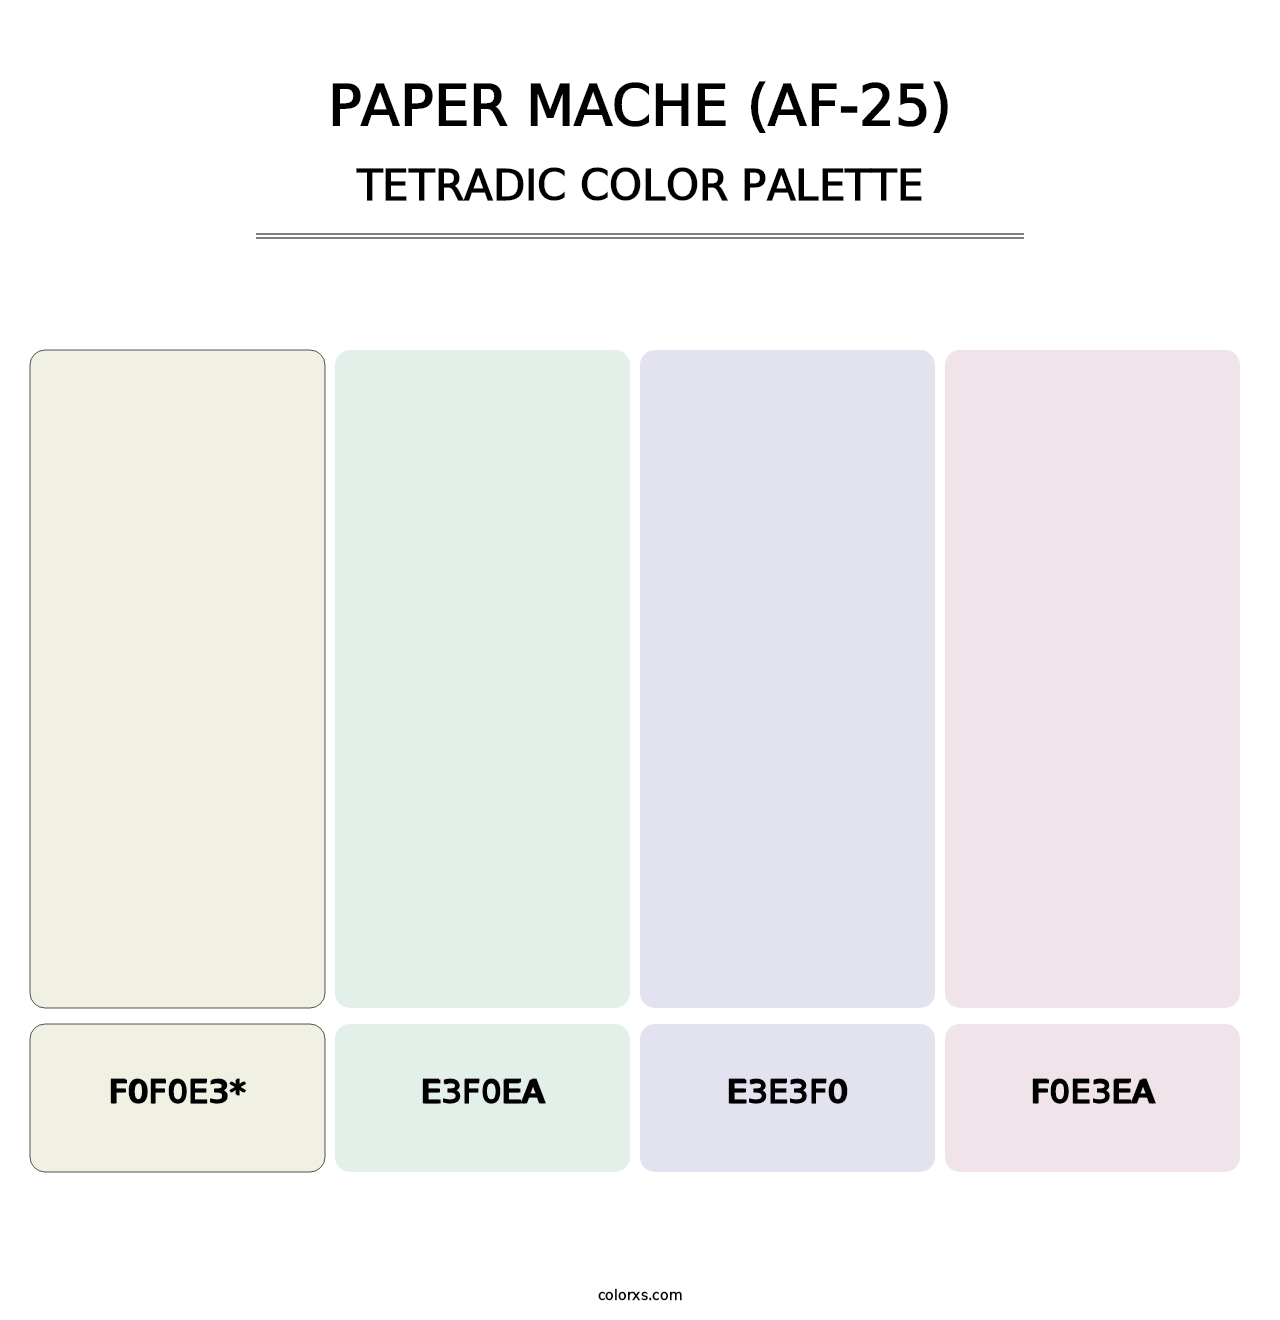 Paper Mache (AF-25) - Tetradic Color Palette